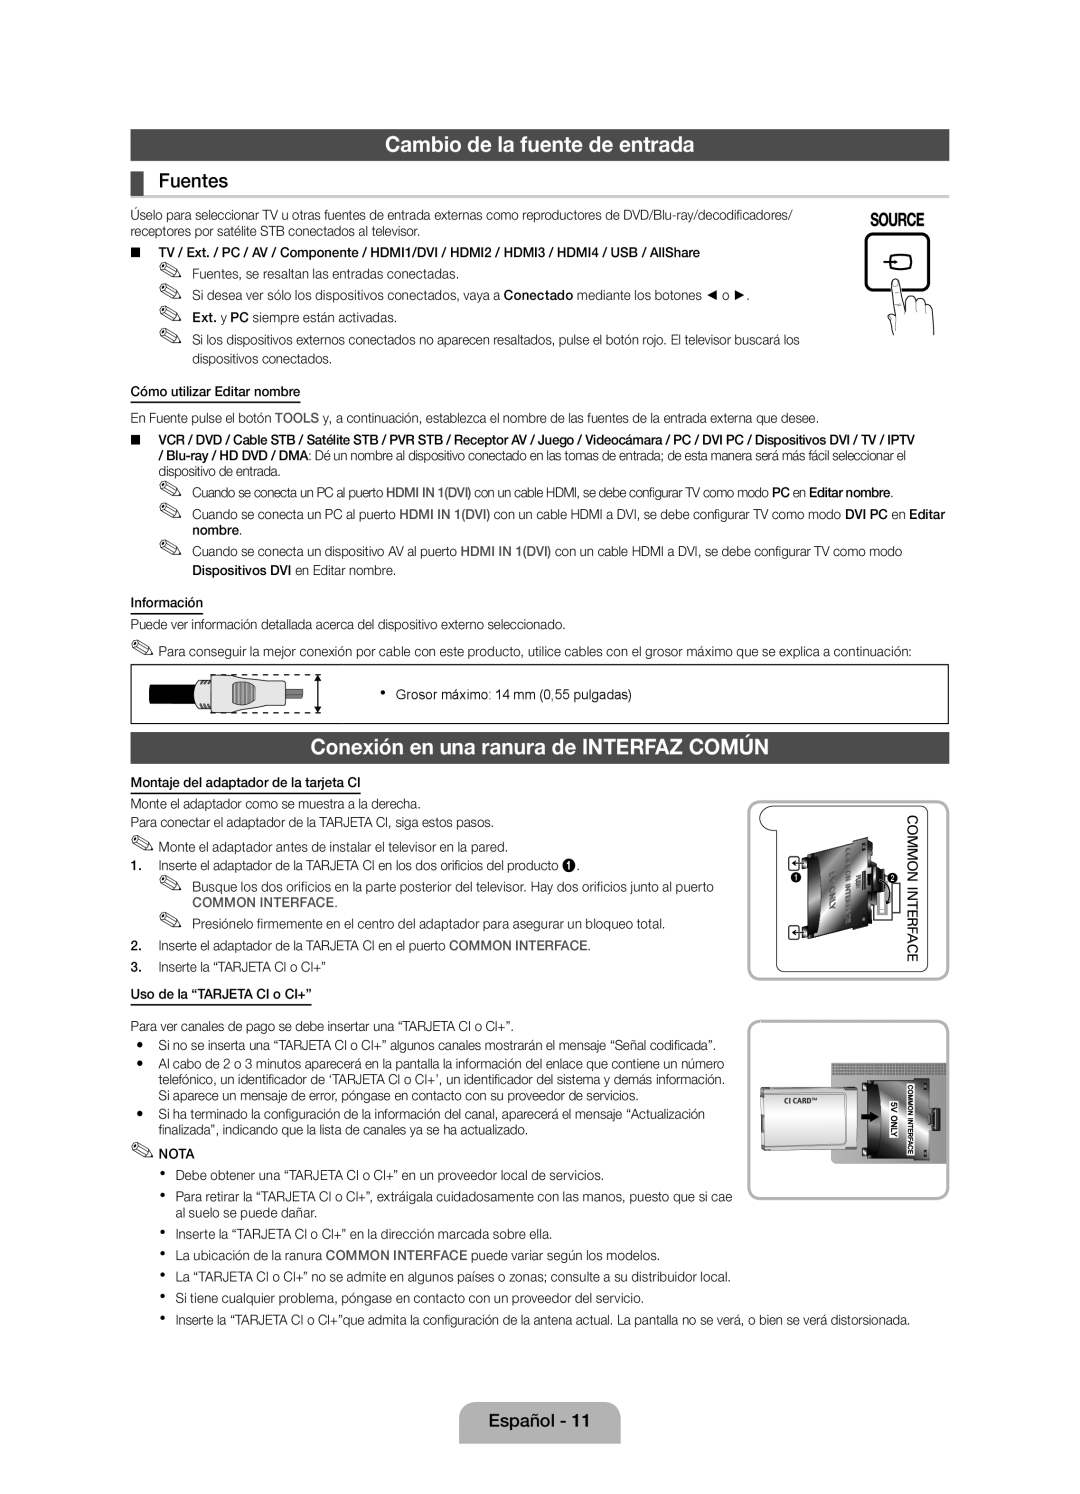 Samsung UE46D5000PWXXH Cambio de la fuente de entrada, Conexión en una ranura de INTERFAZ COMÚN, Fuentes, Common Interface 